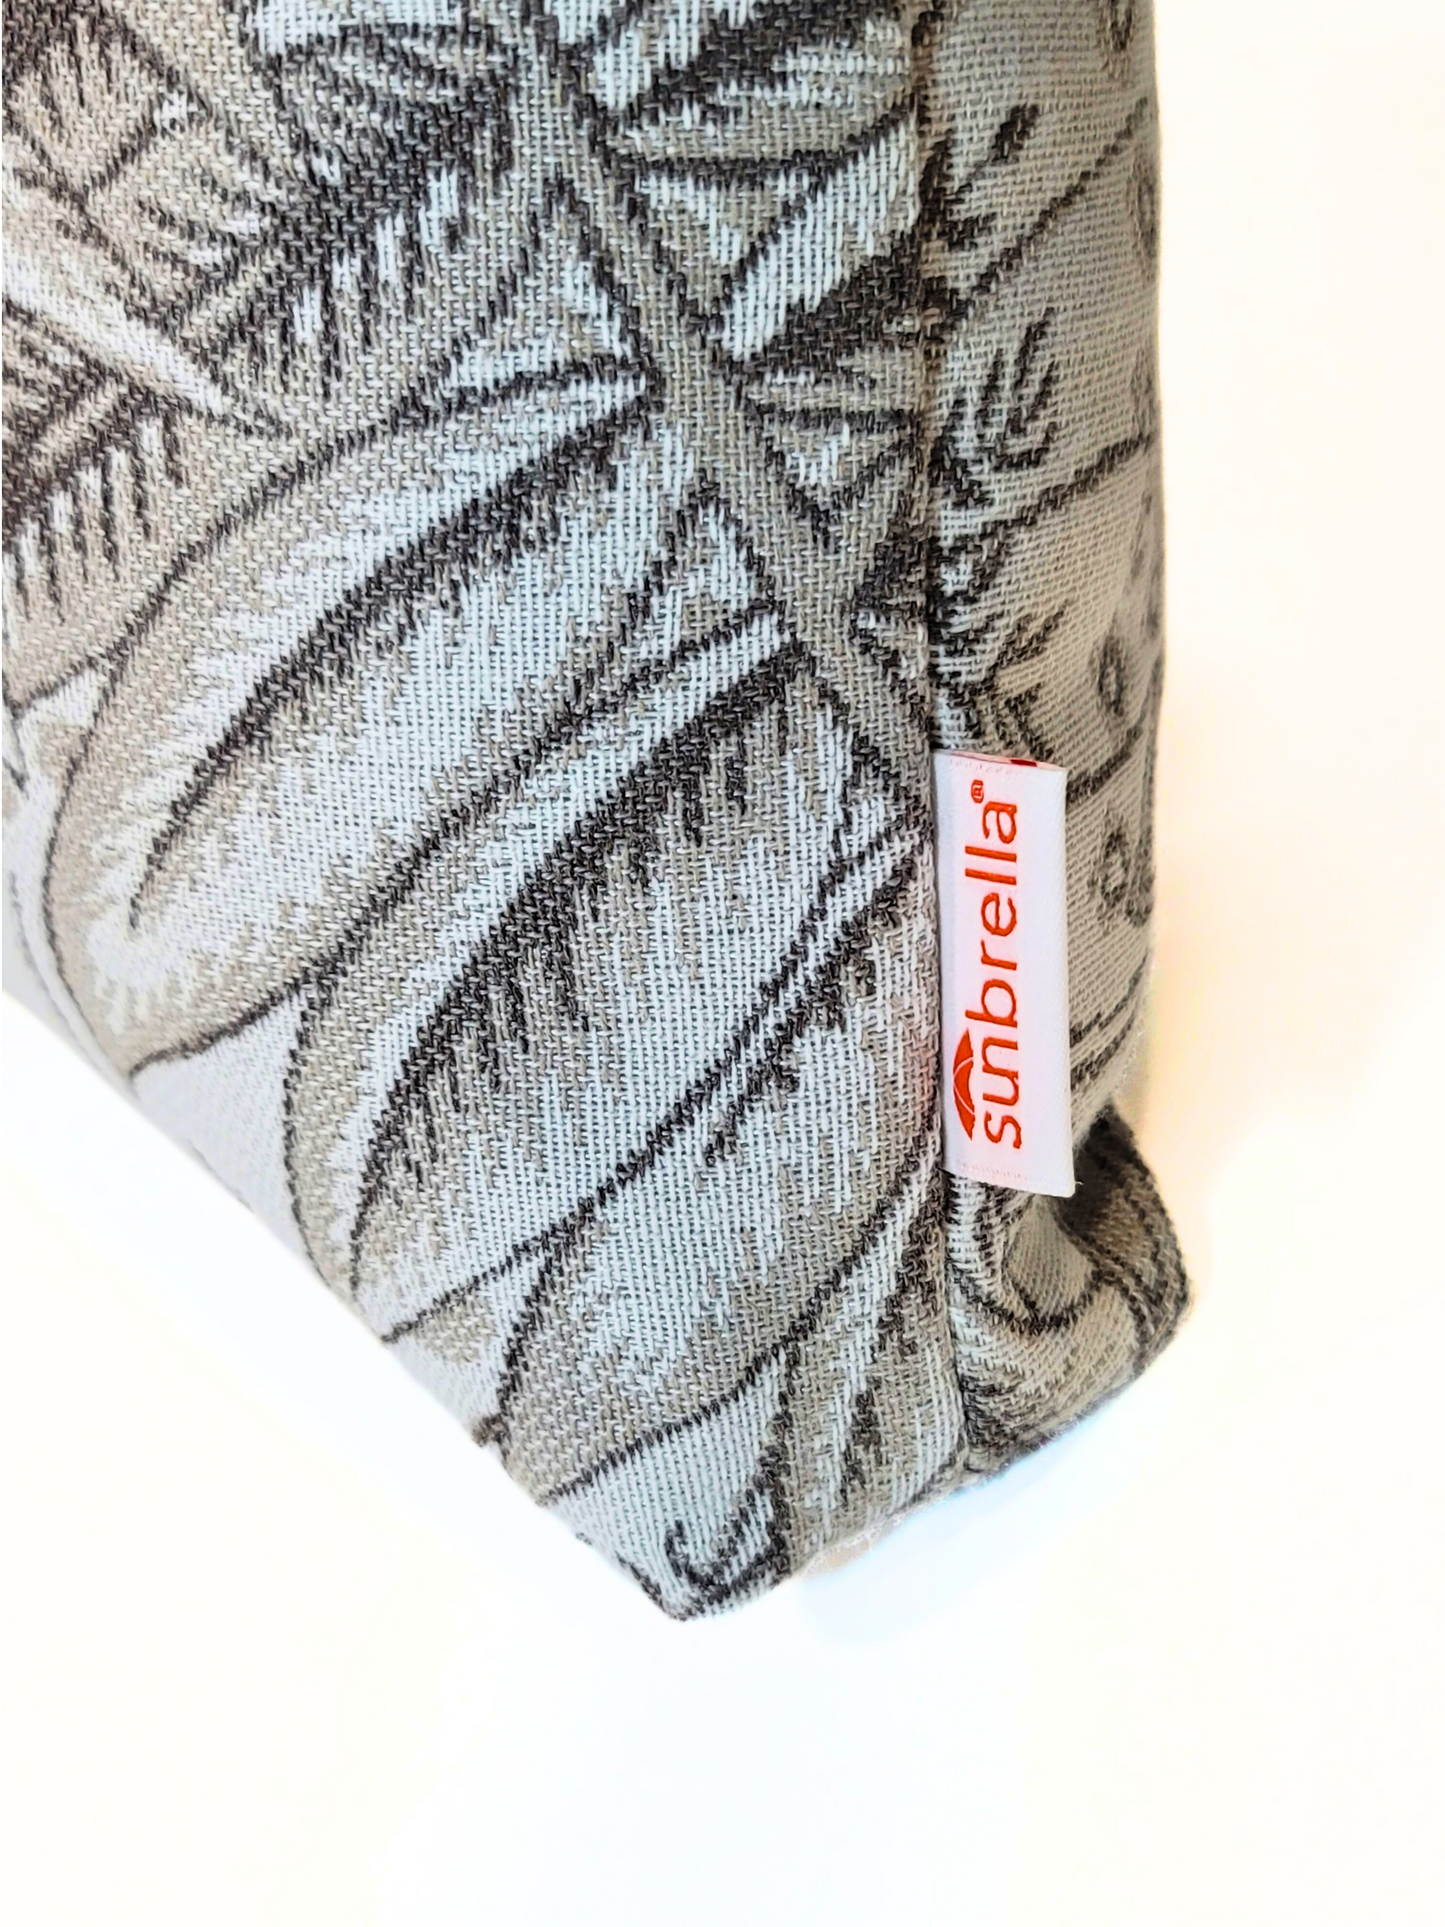 Sunbrella Premium "Sensibility II Linen" Indoor/Outdoor Toss Pillow Cover